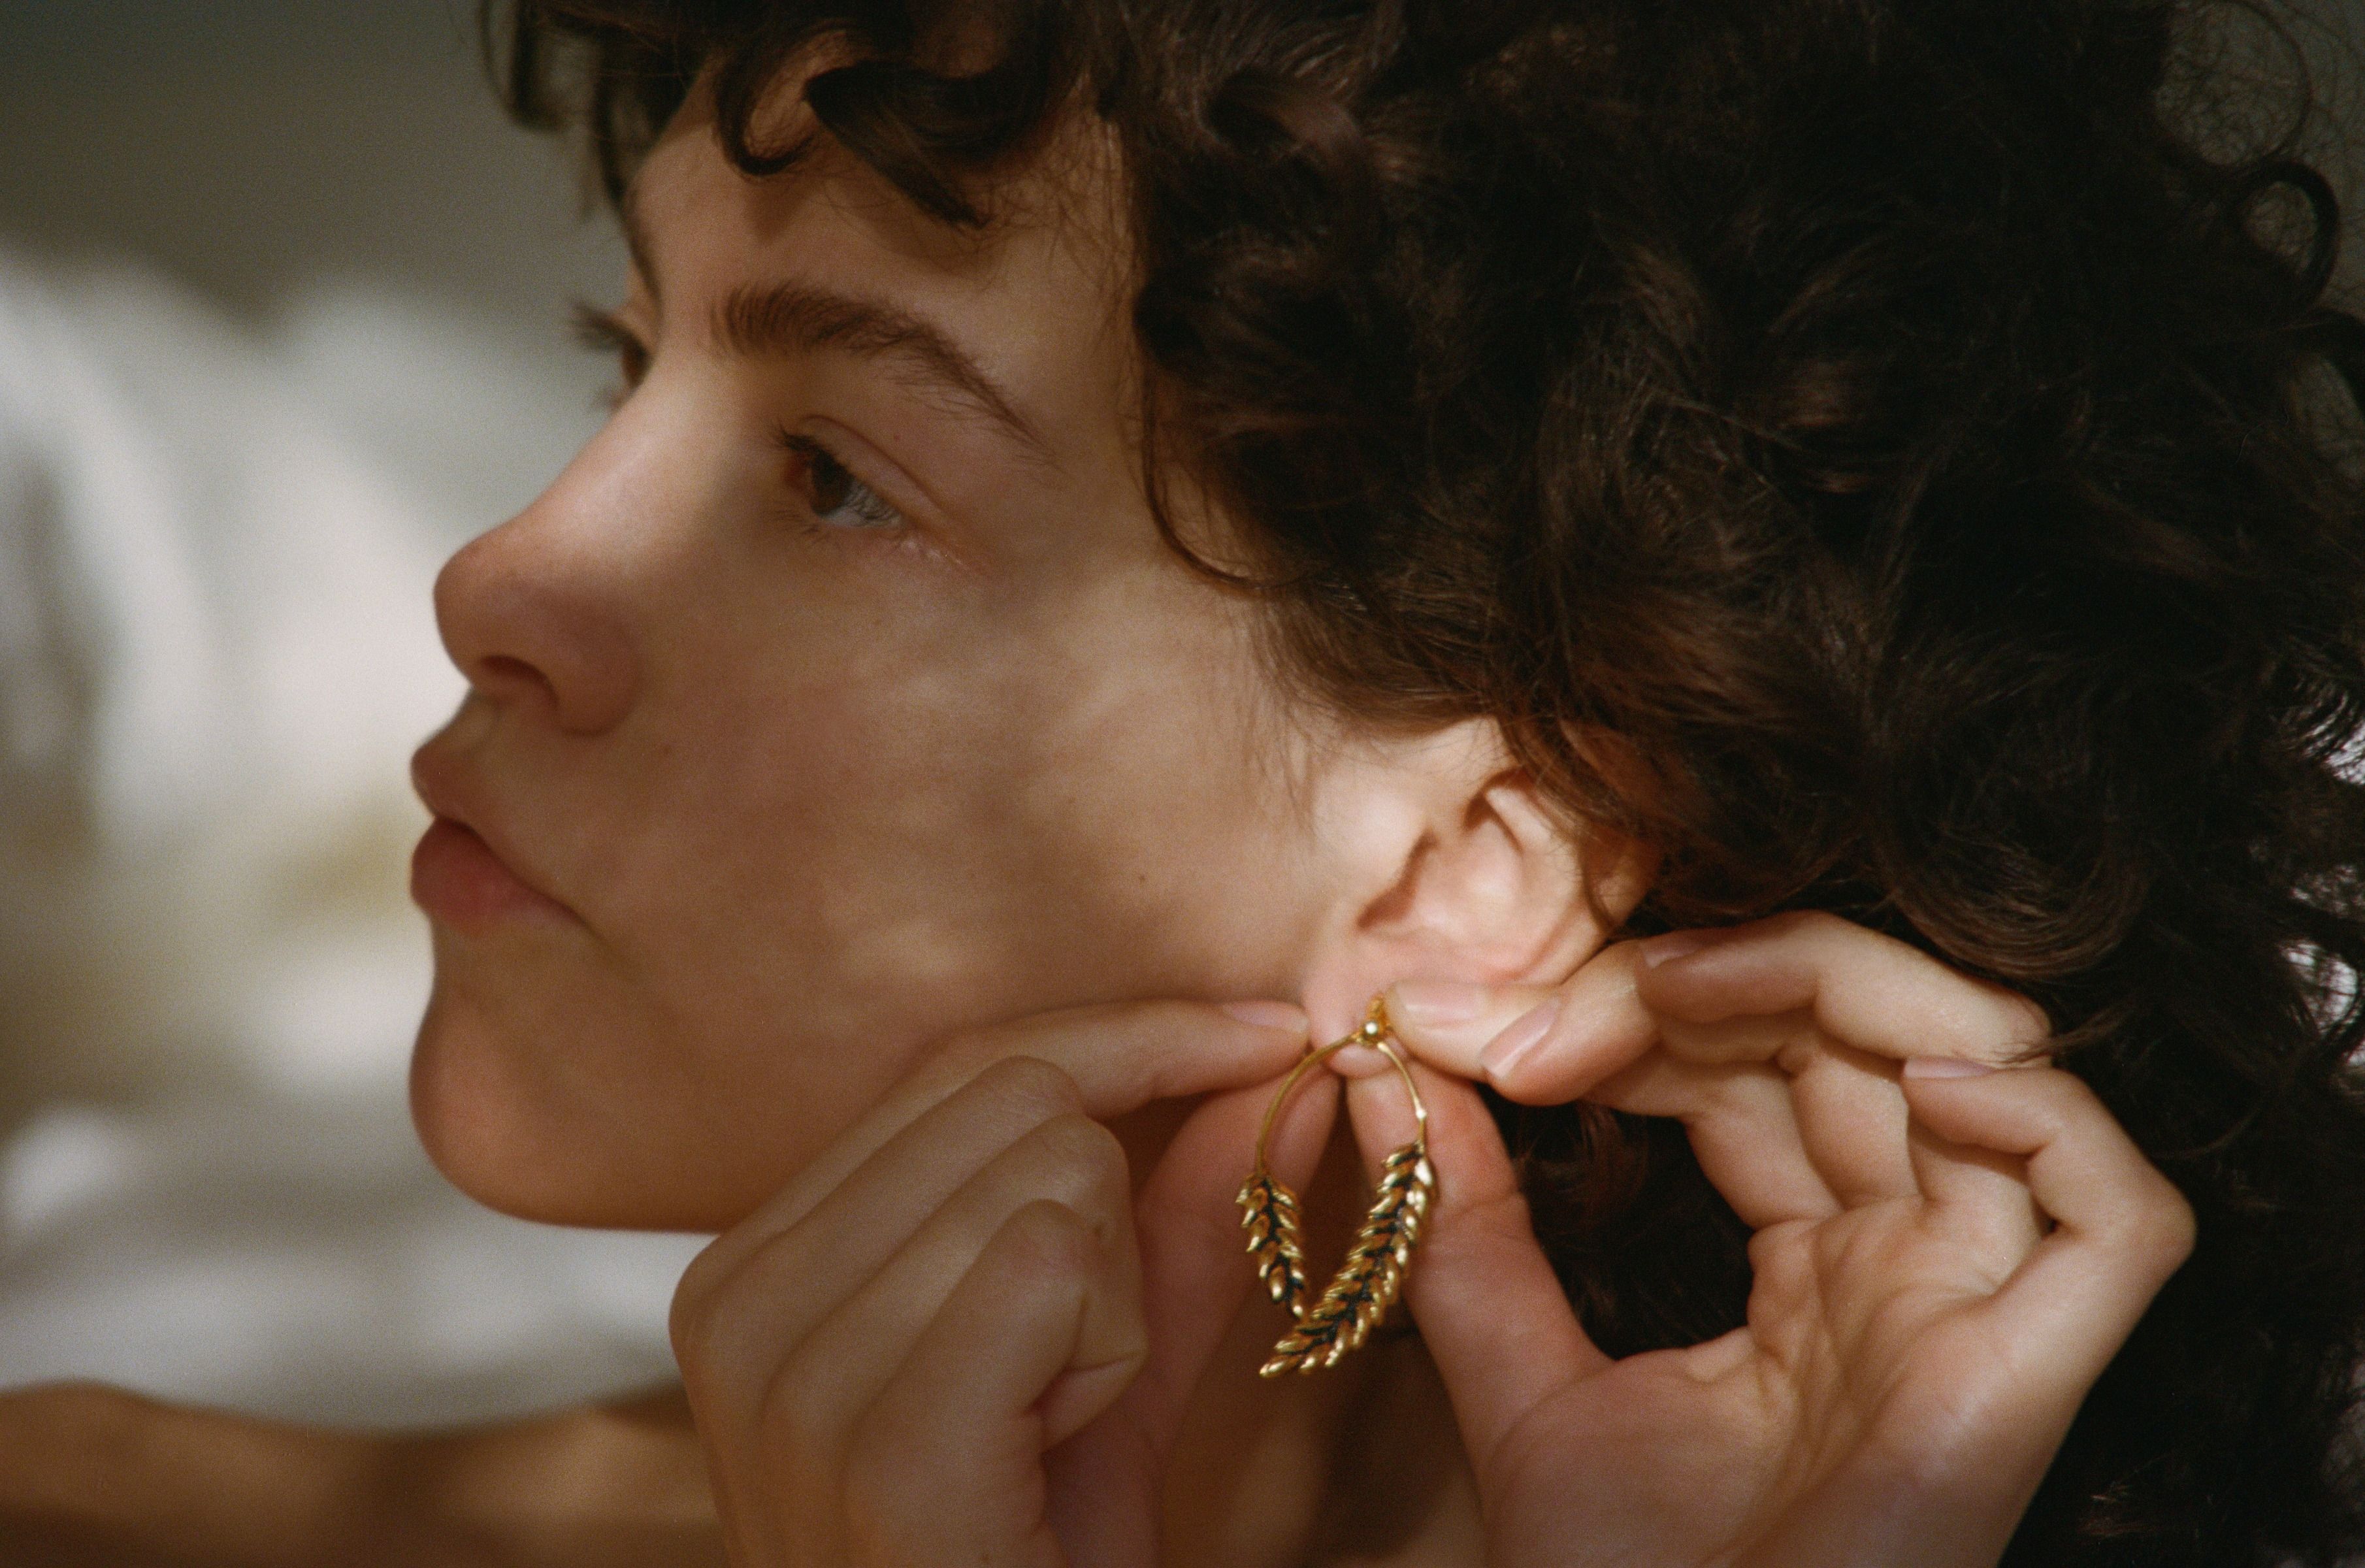 Gold plated earrings Wheat - Aurélie Bidermann